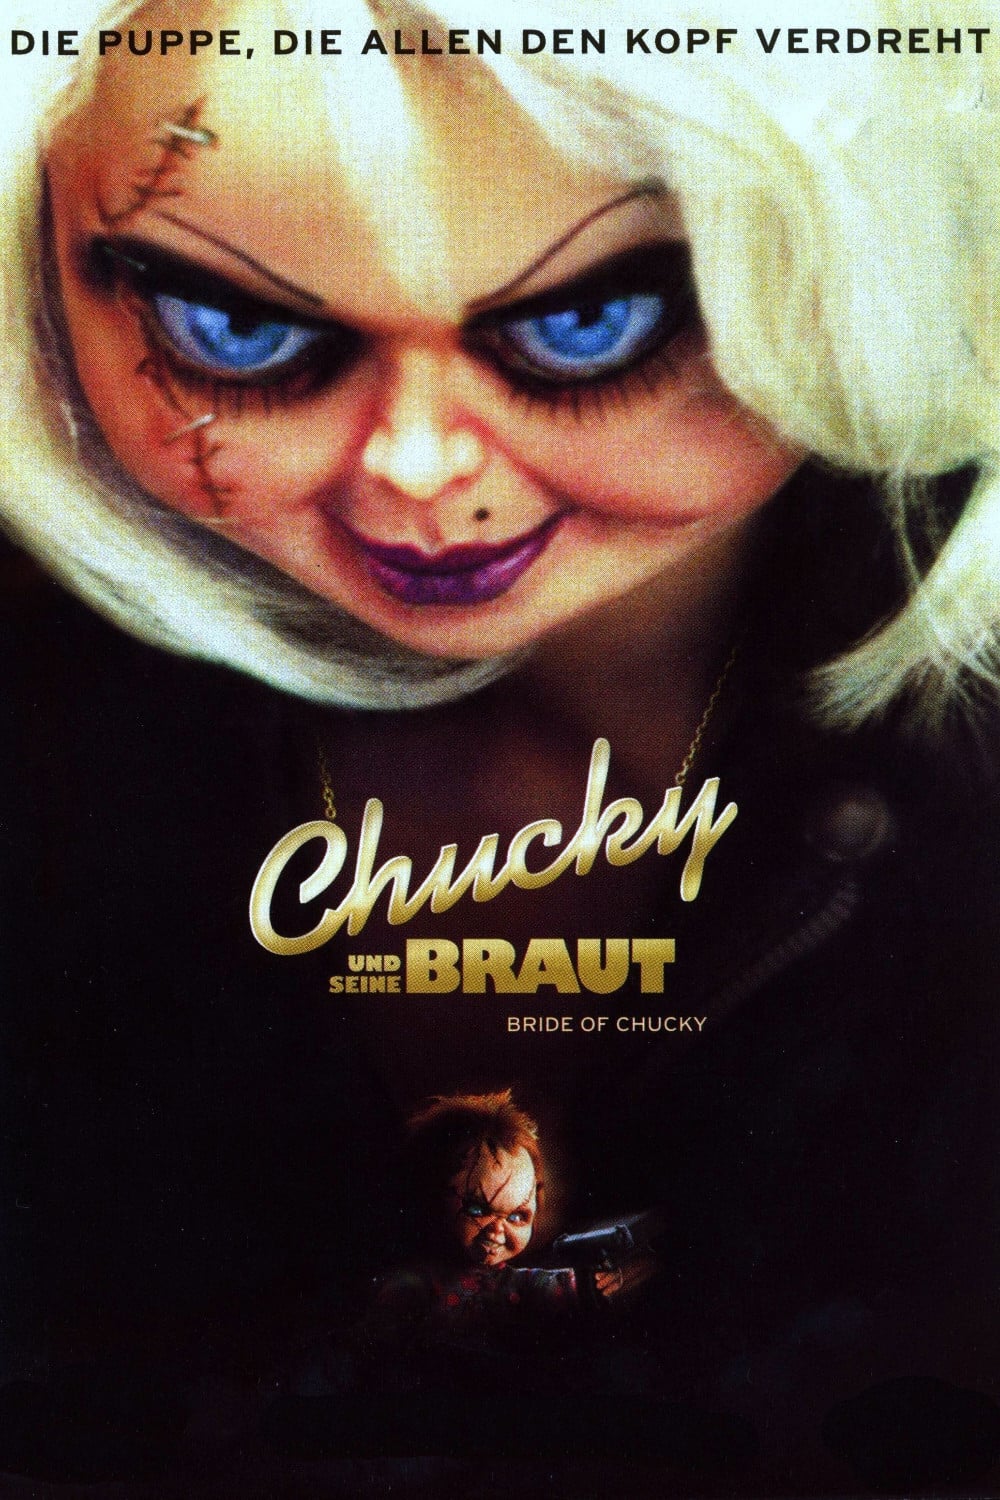 Plakat von "Chucky und seine Braut"